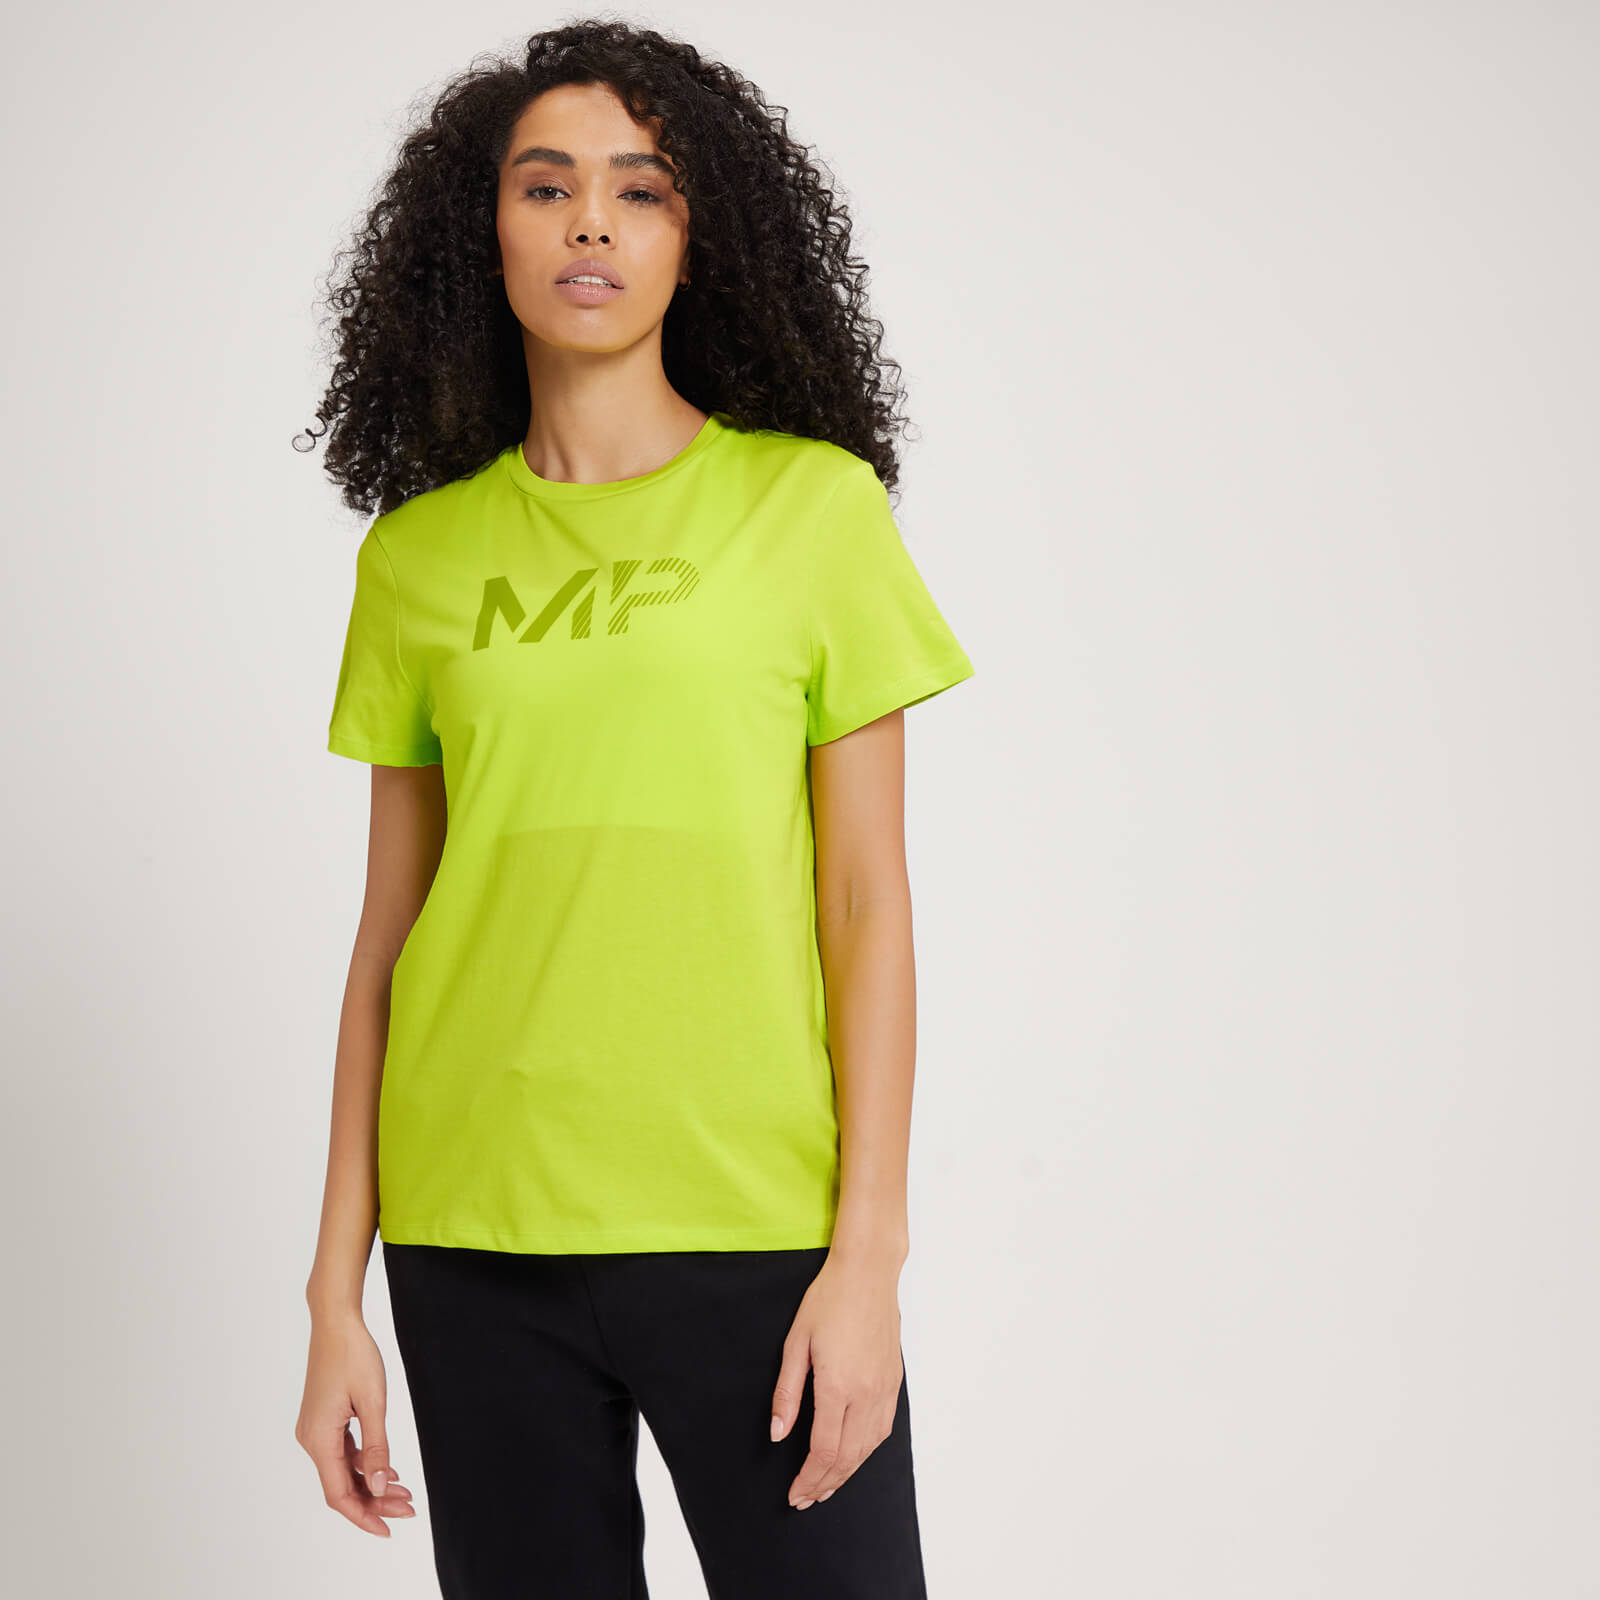 T-shirt MP Fade Graphic pour femmes – Citron vert